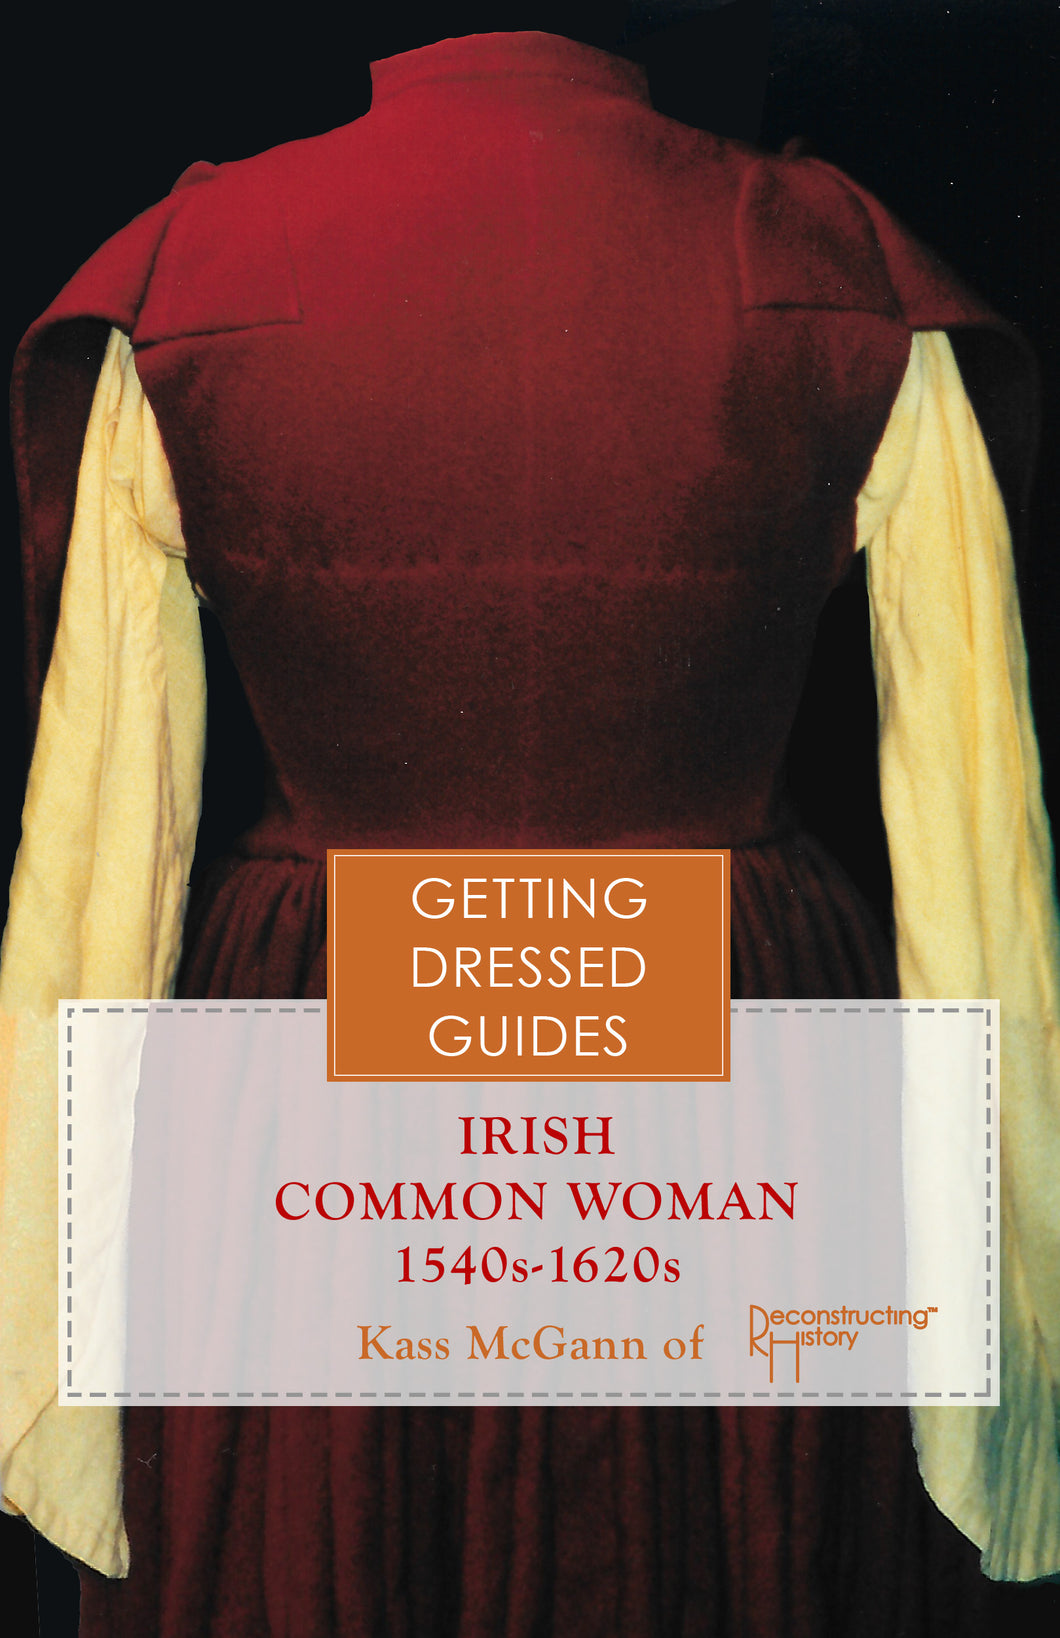 16th century Irish Women's Getting Dressed Guide